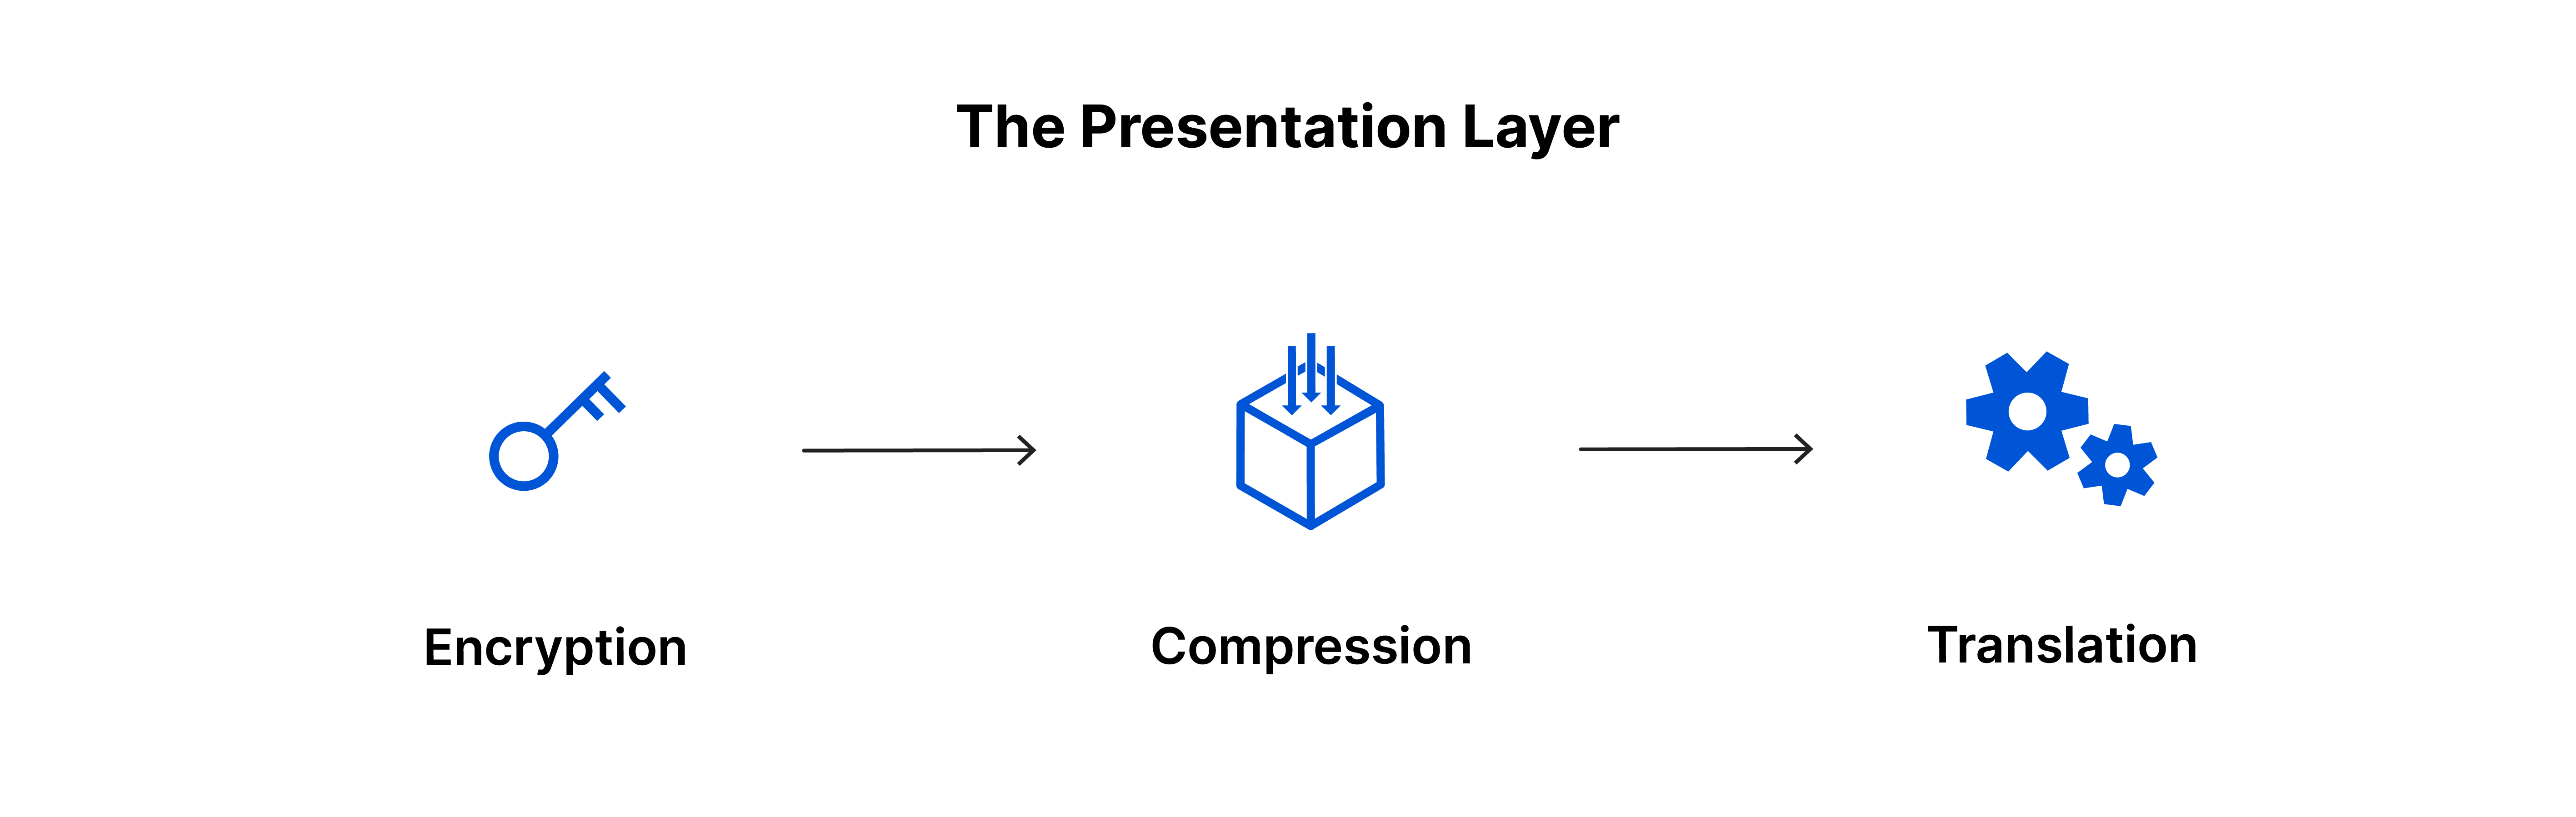 La couche de présentation : cryptage, compression, traduction.